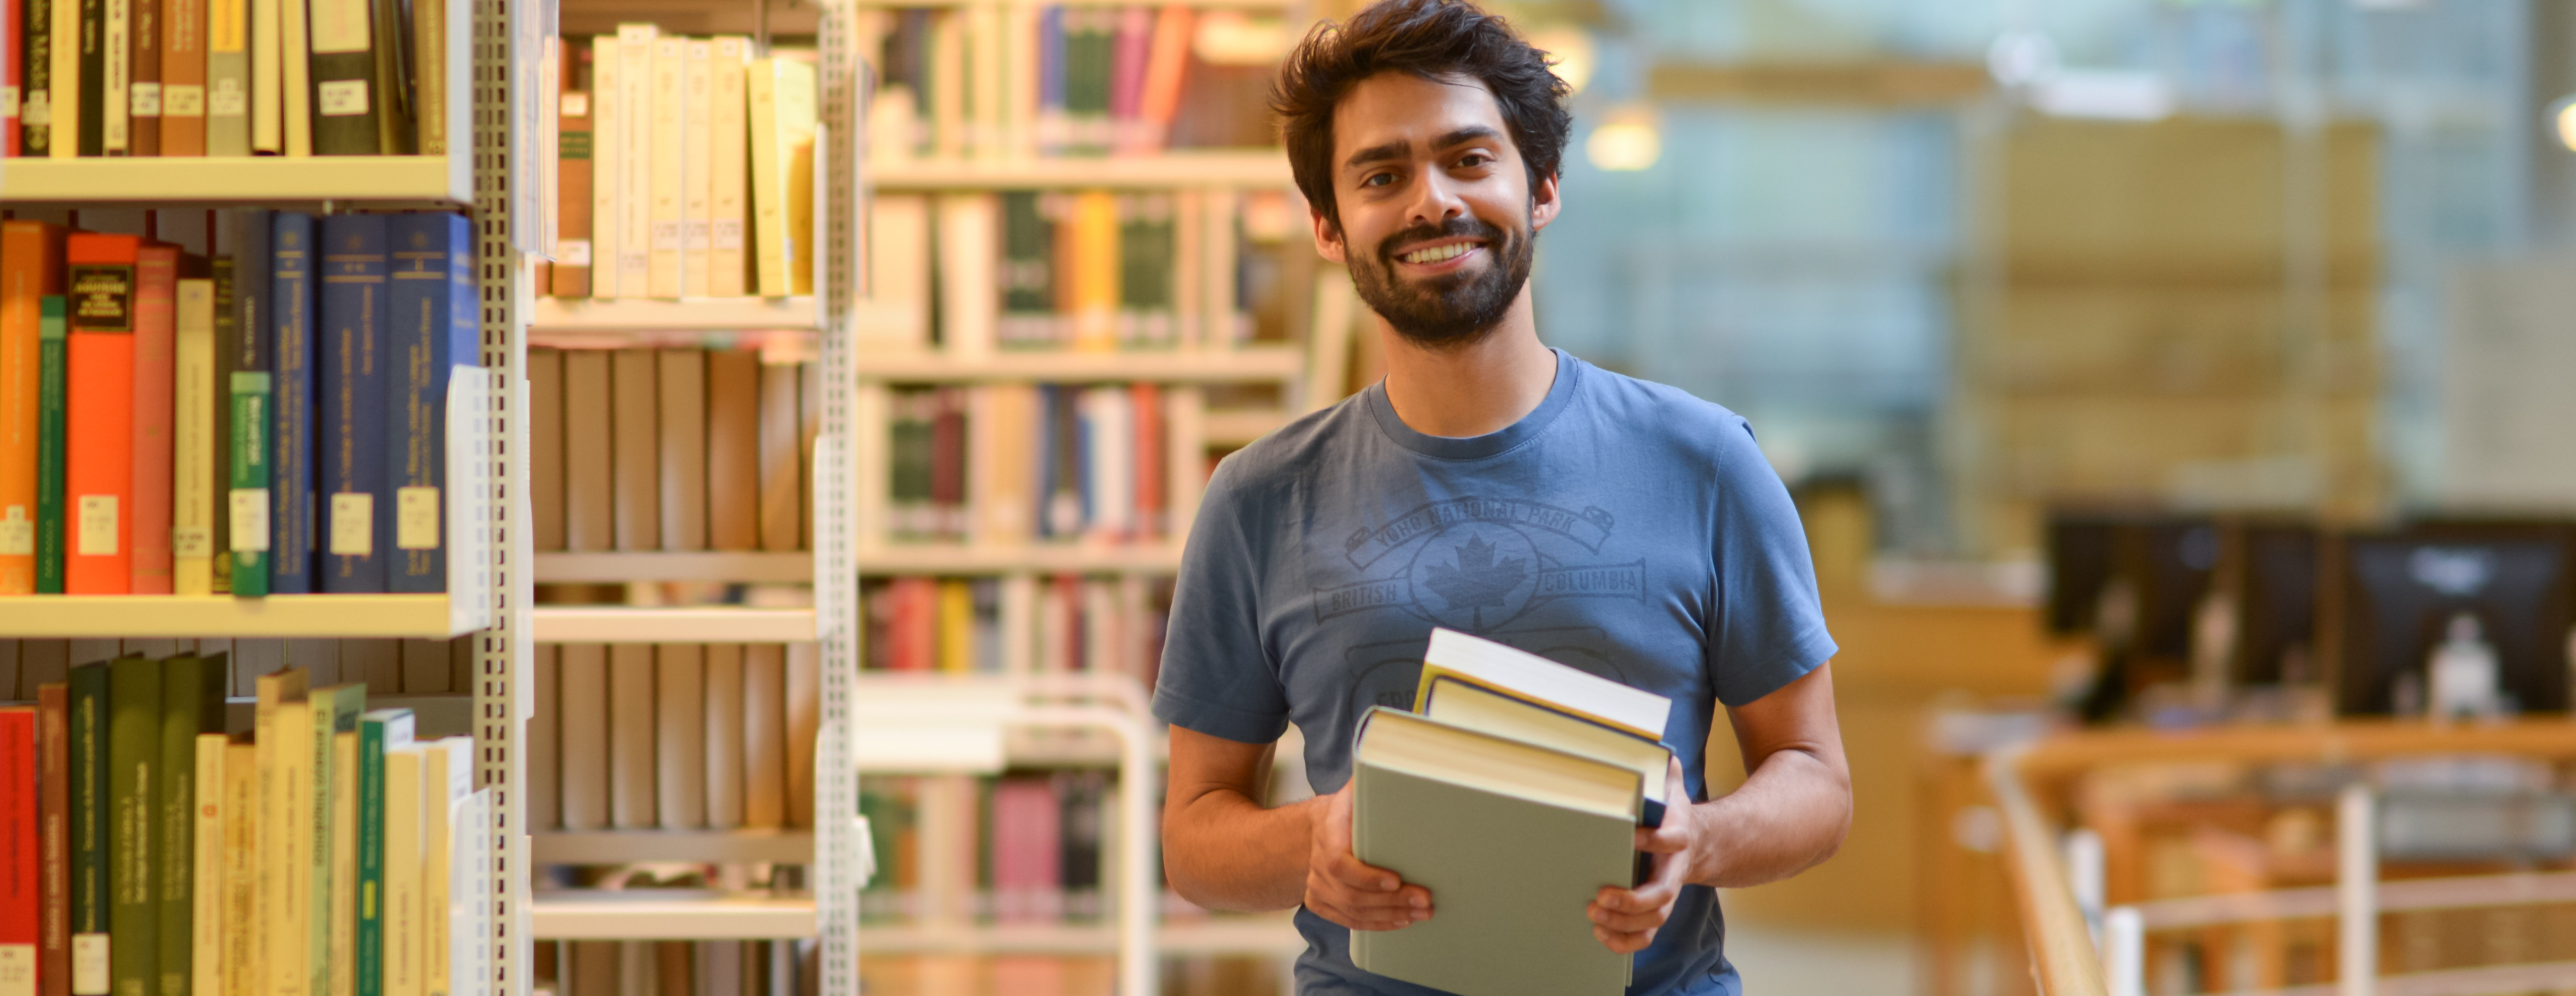 Zentralbibliothek: Leihen und Nutzen - Student mit Büchern